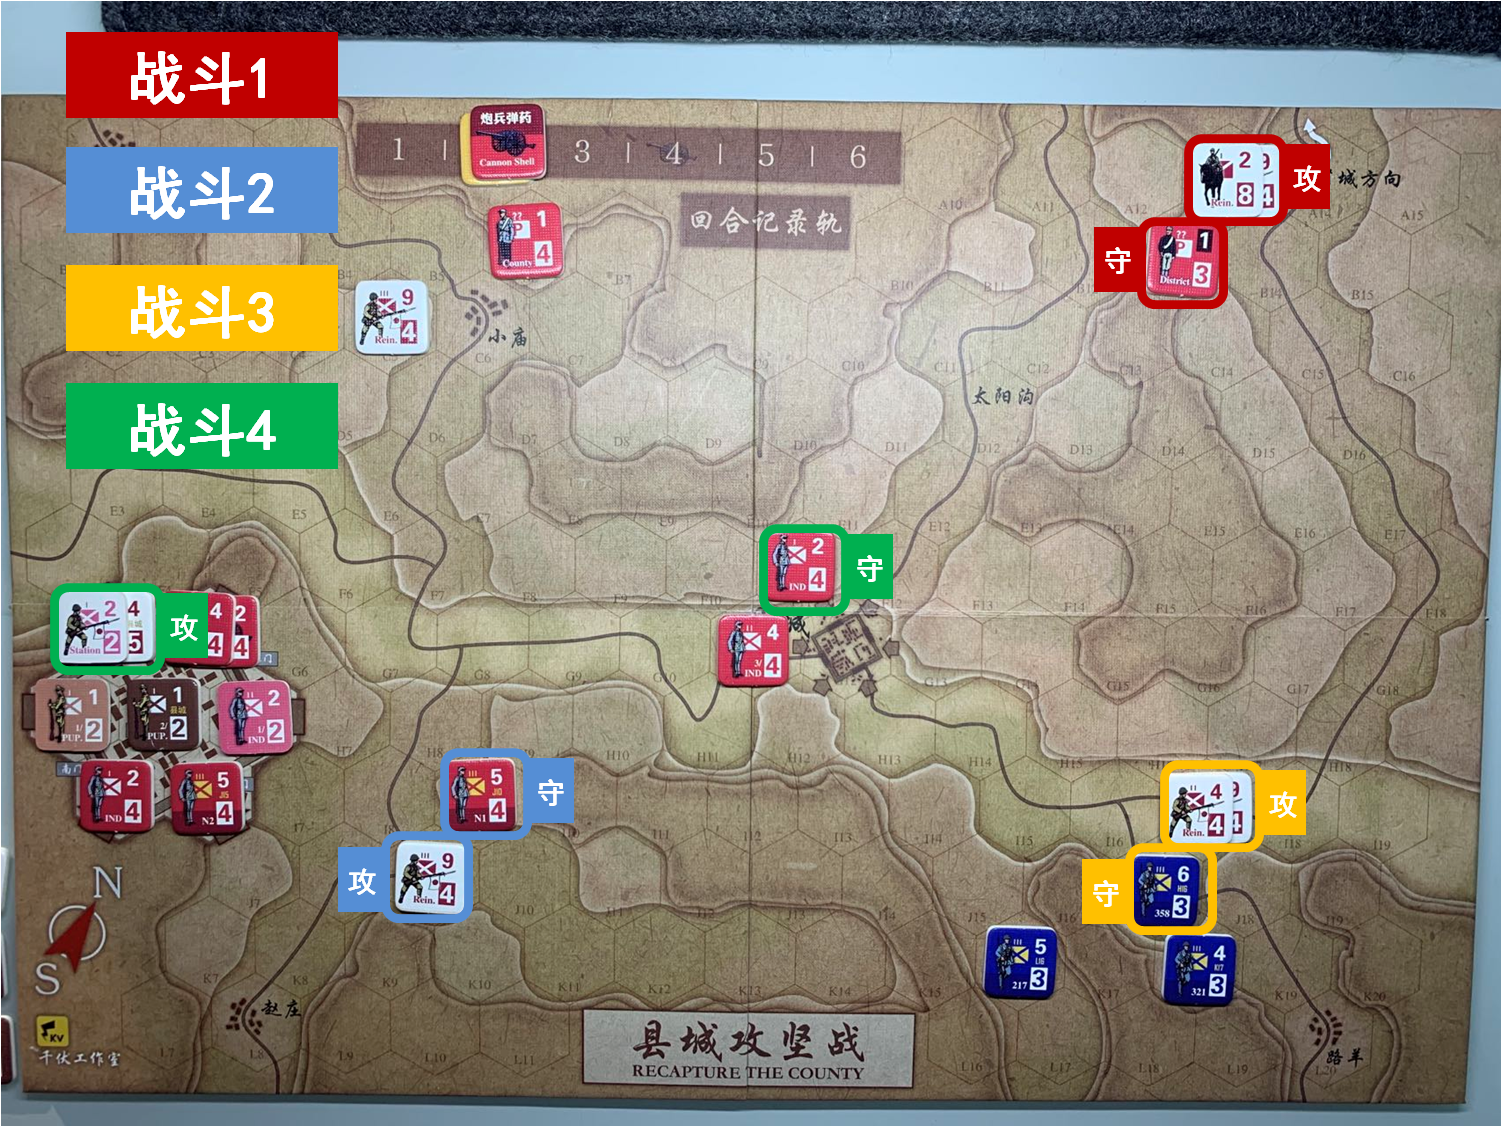 第二回合 日方戰鬥階段 戰鬥計劃